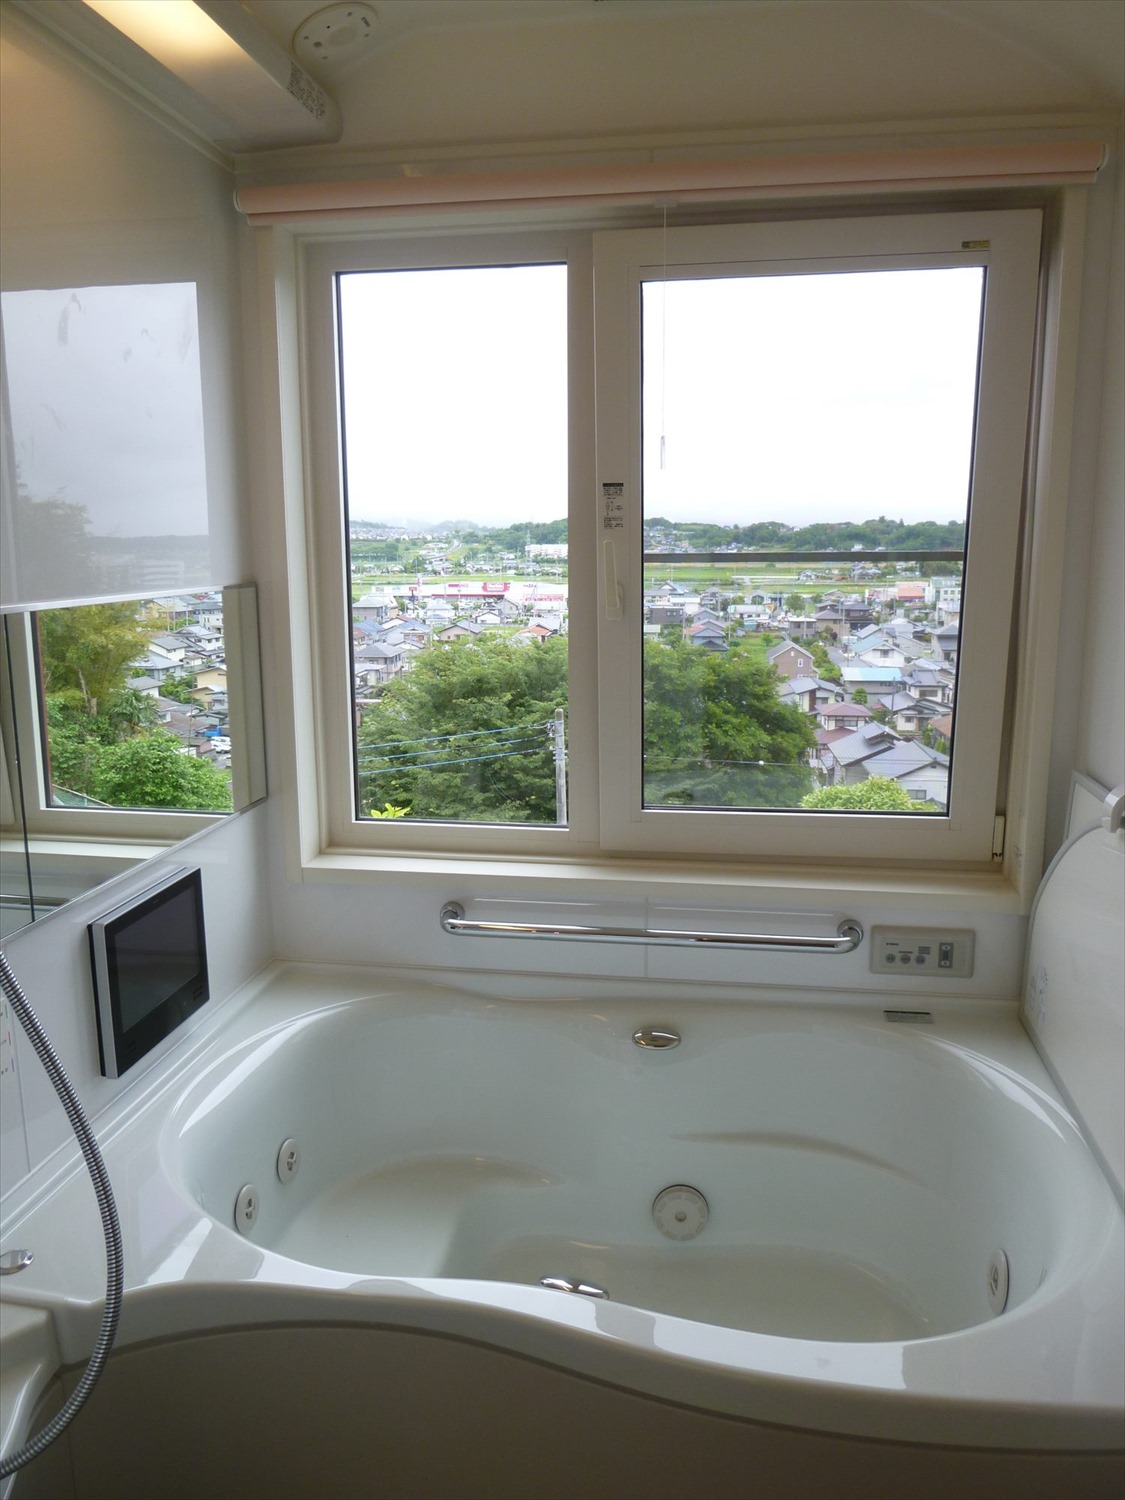 窓からの景観が美しい浴室